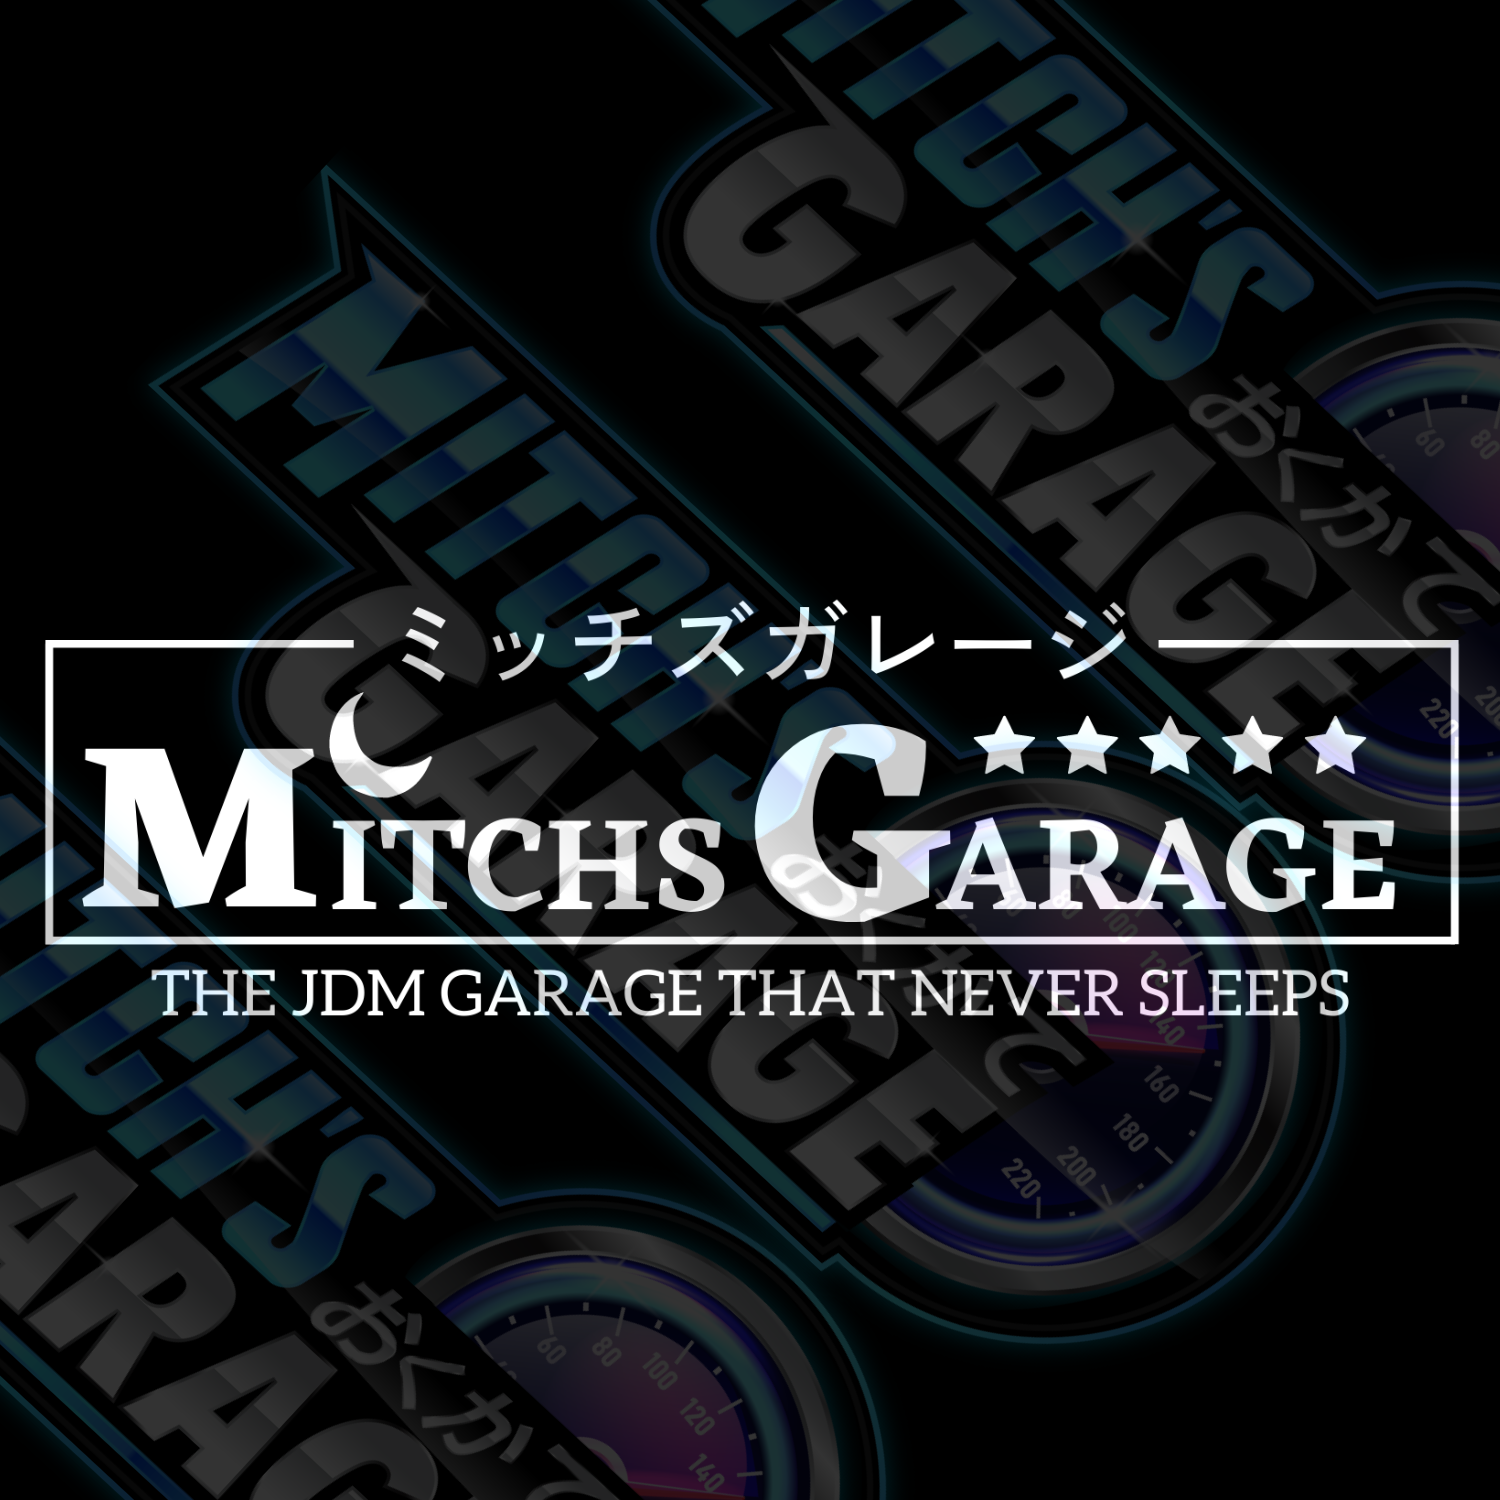 Mitchs Garage The Garage That Never Sleeps Vinyl Decal